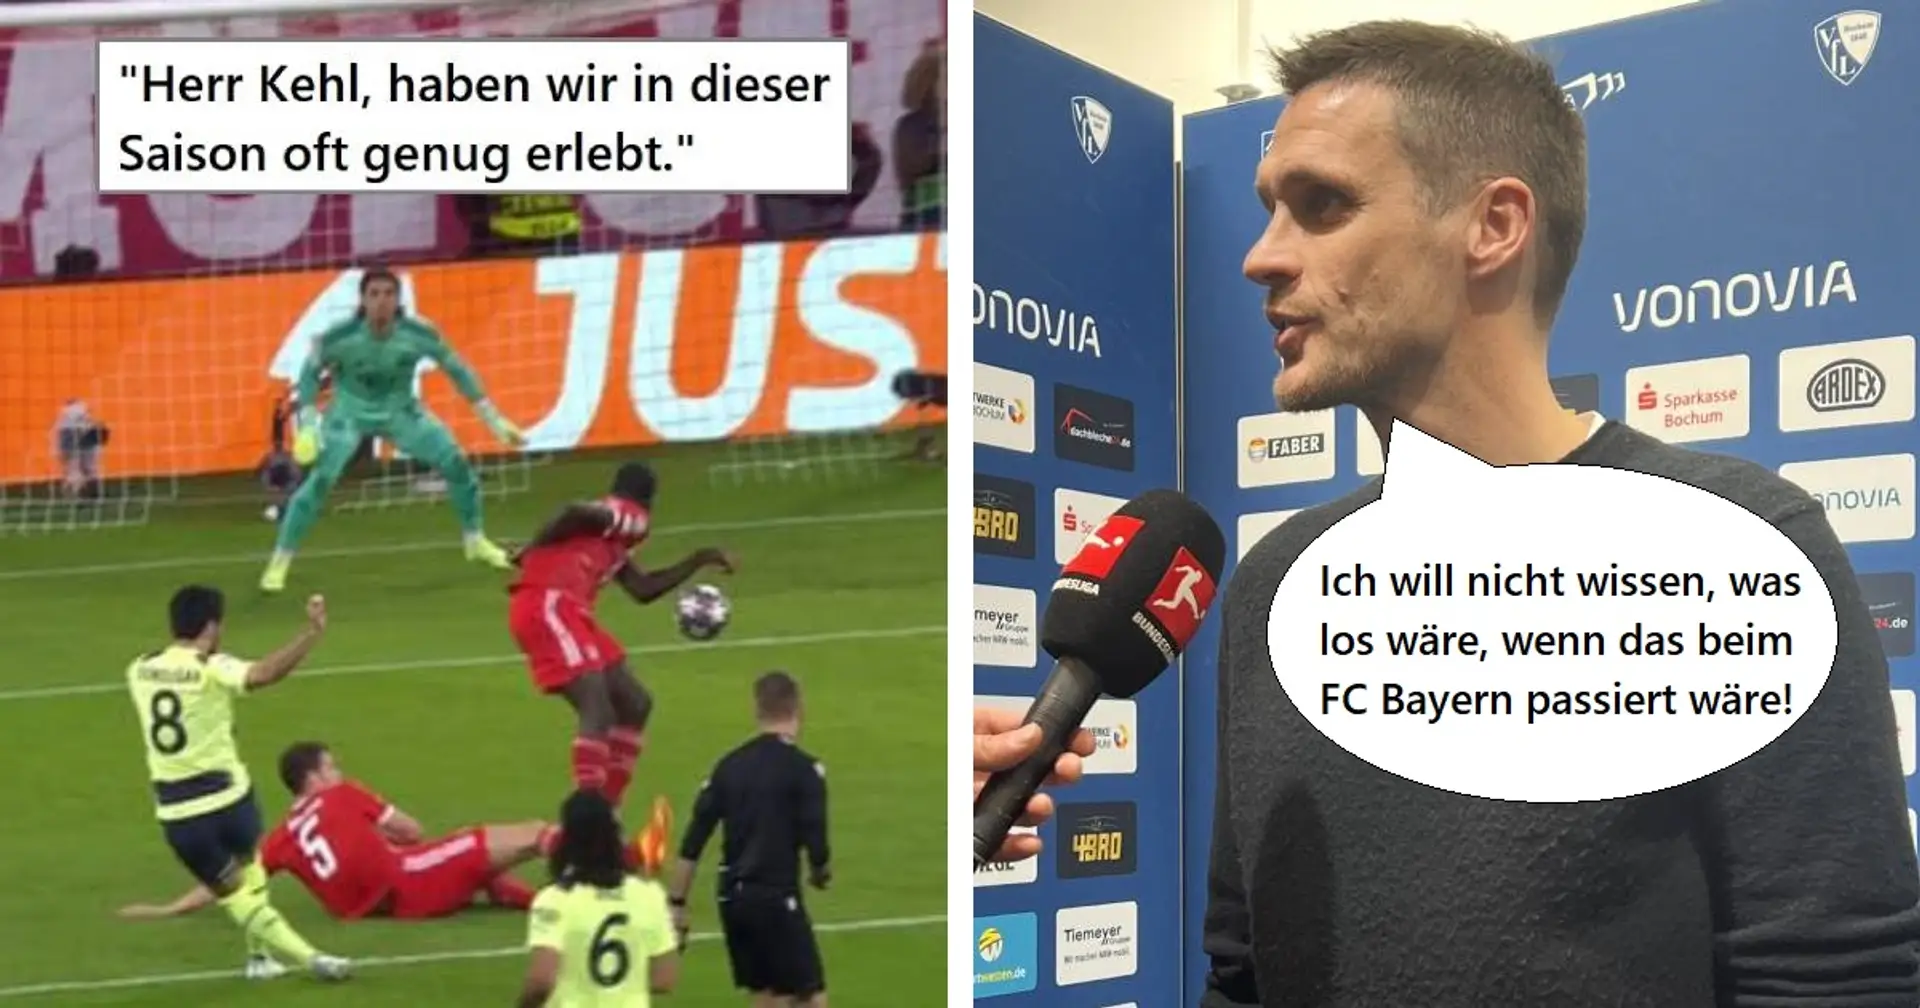 "Sofort Bayern mit reinzuziehen ist einfach nur peinlich": Fan kontert Kehl, der gegen Schiri poltert und dabei Bayern erwähnt